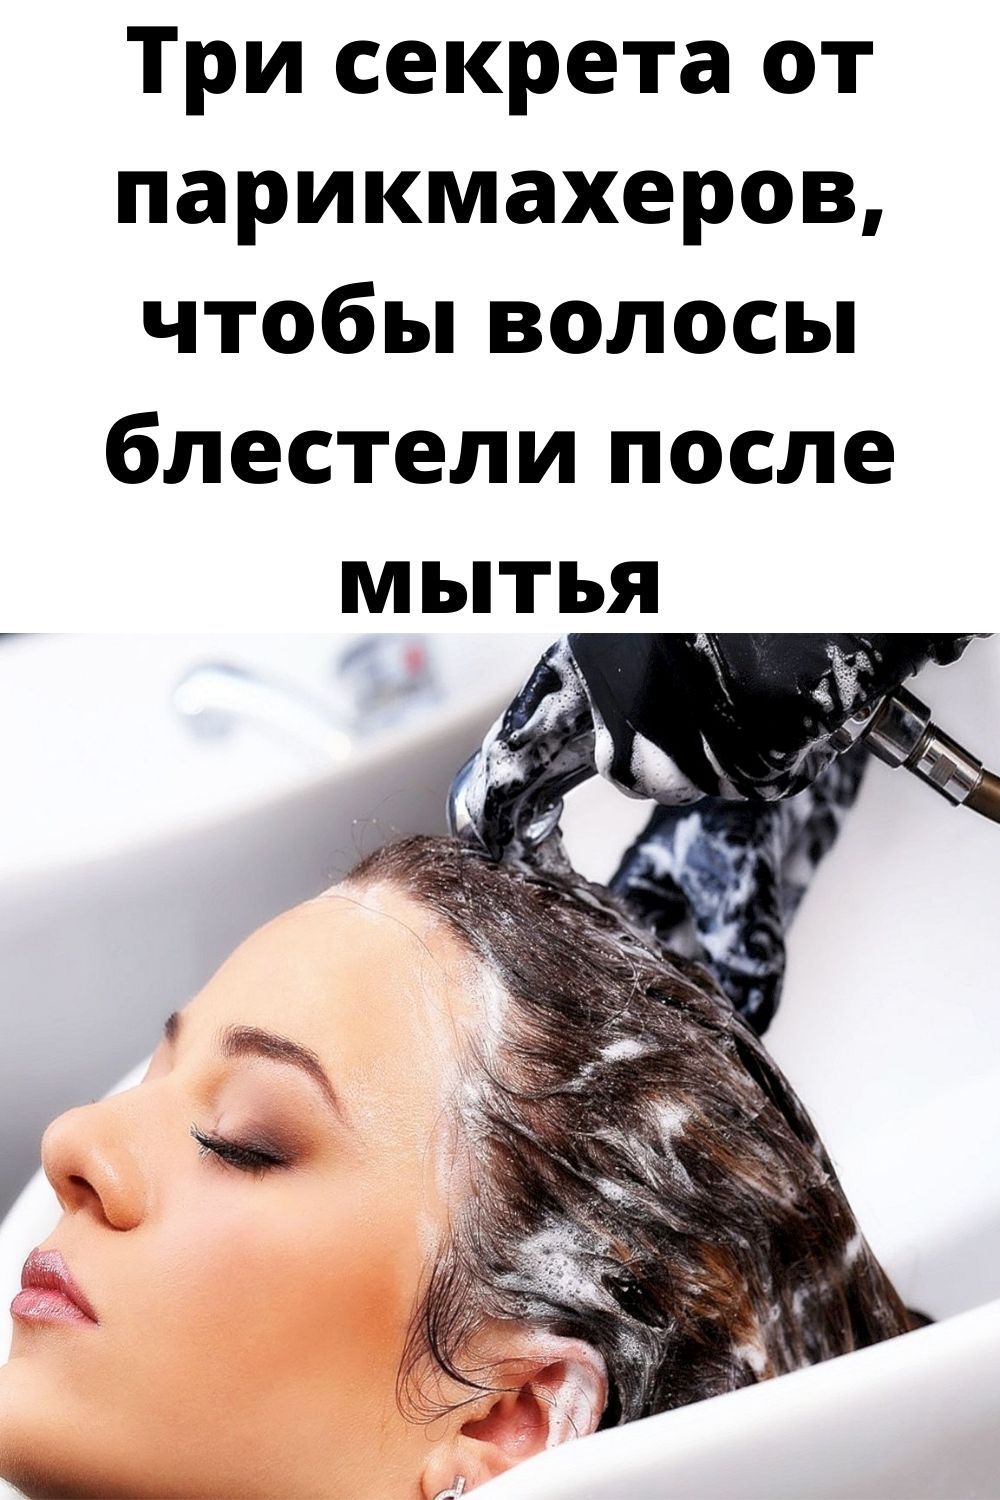 Три секрета от парикмахеров, чтобы волосы блестели после мытья